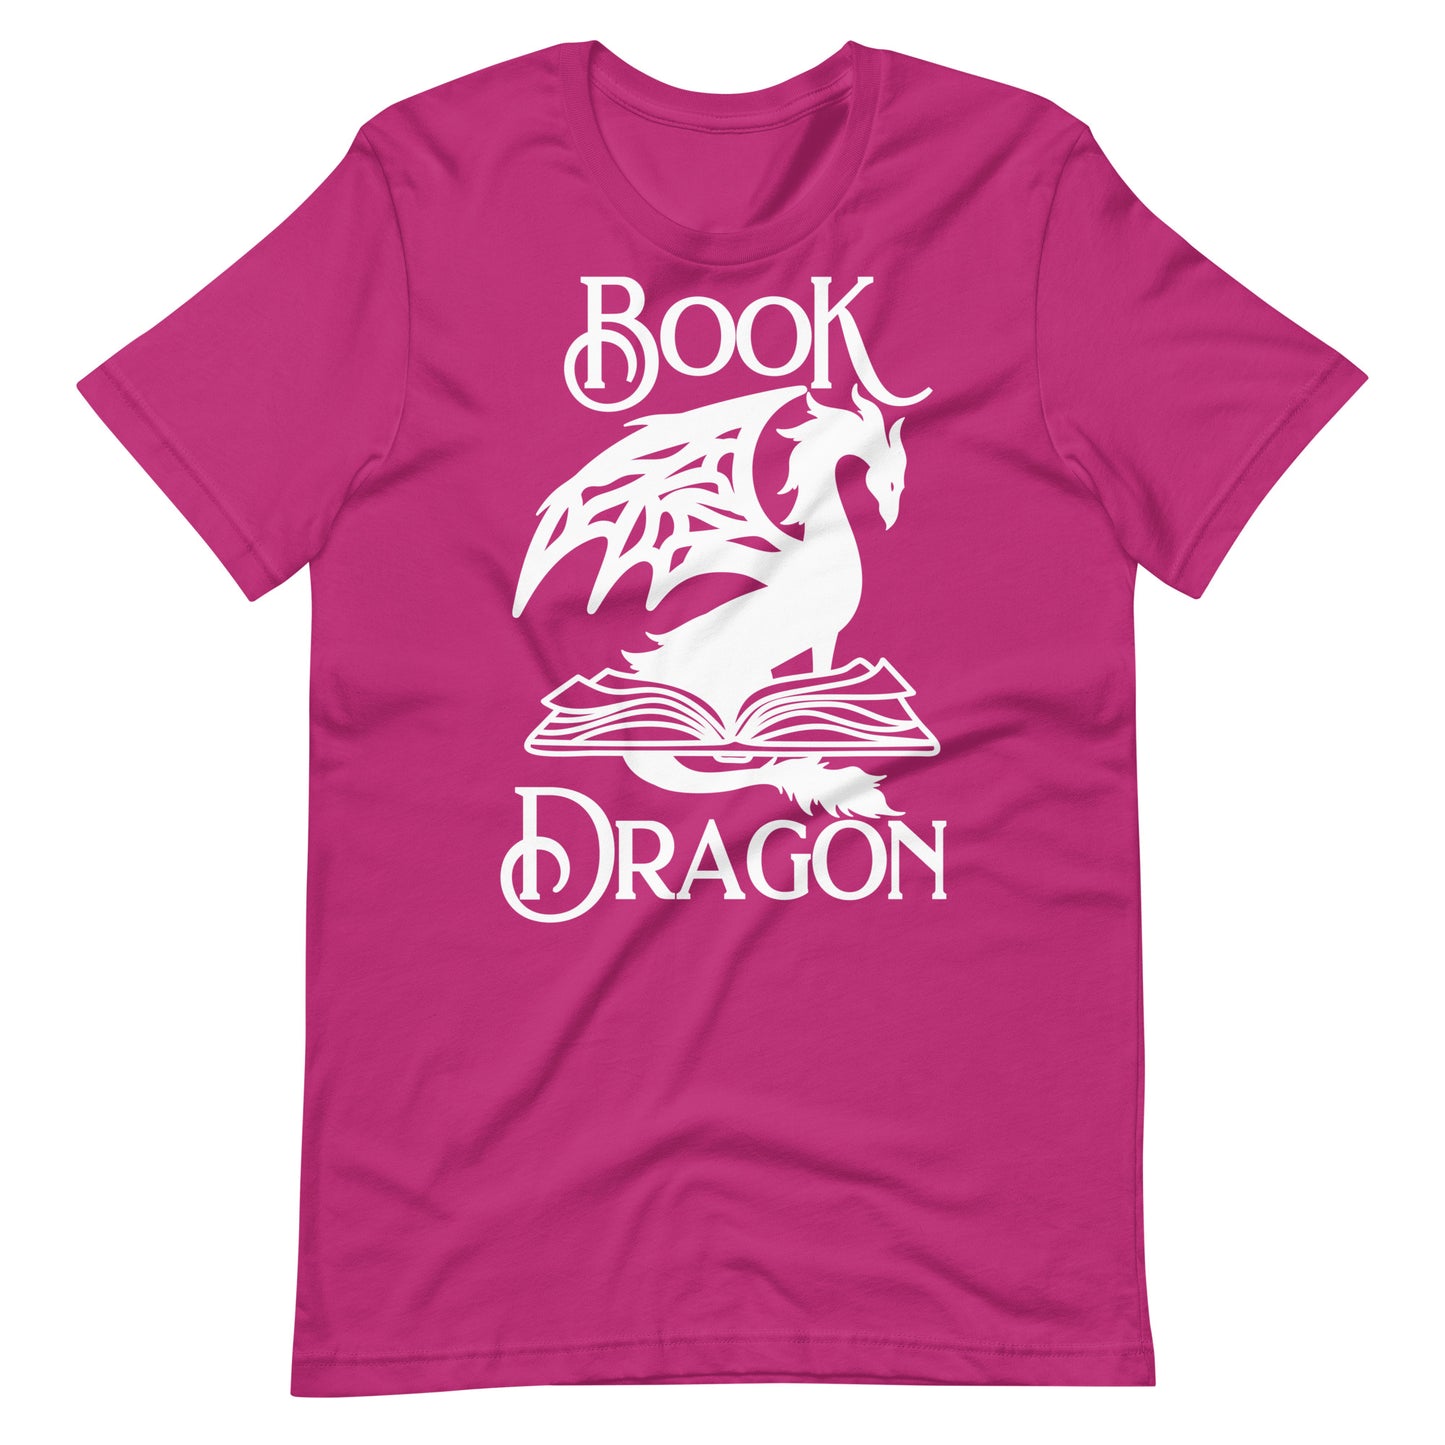 Book Dragon Unisex t-shirt for FireDrake Artistry